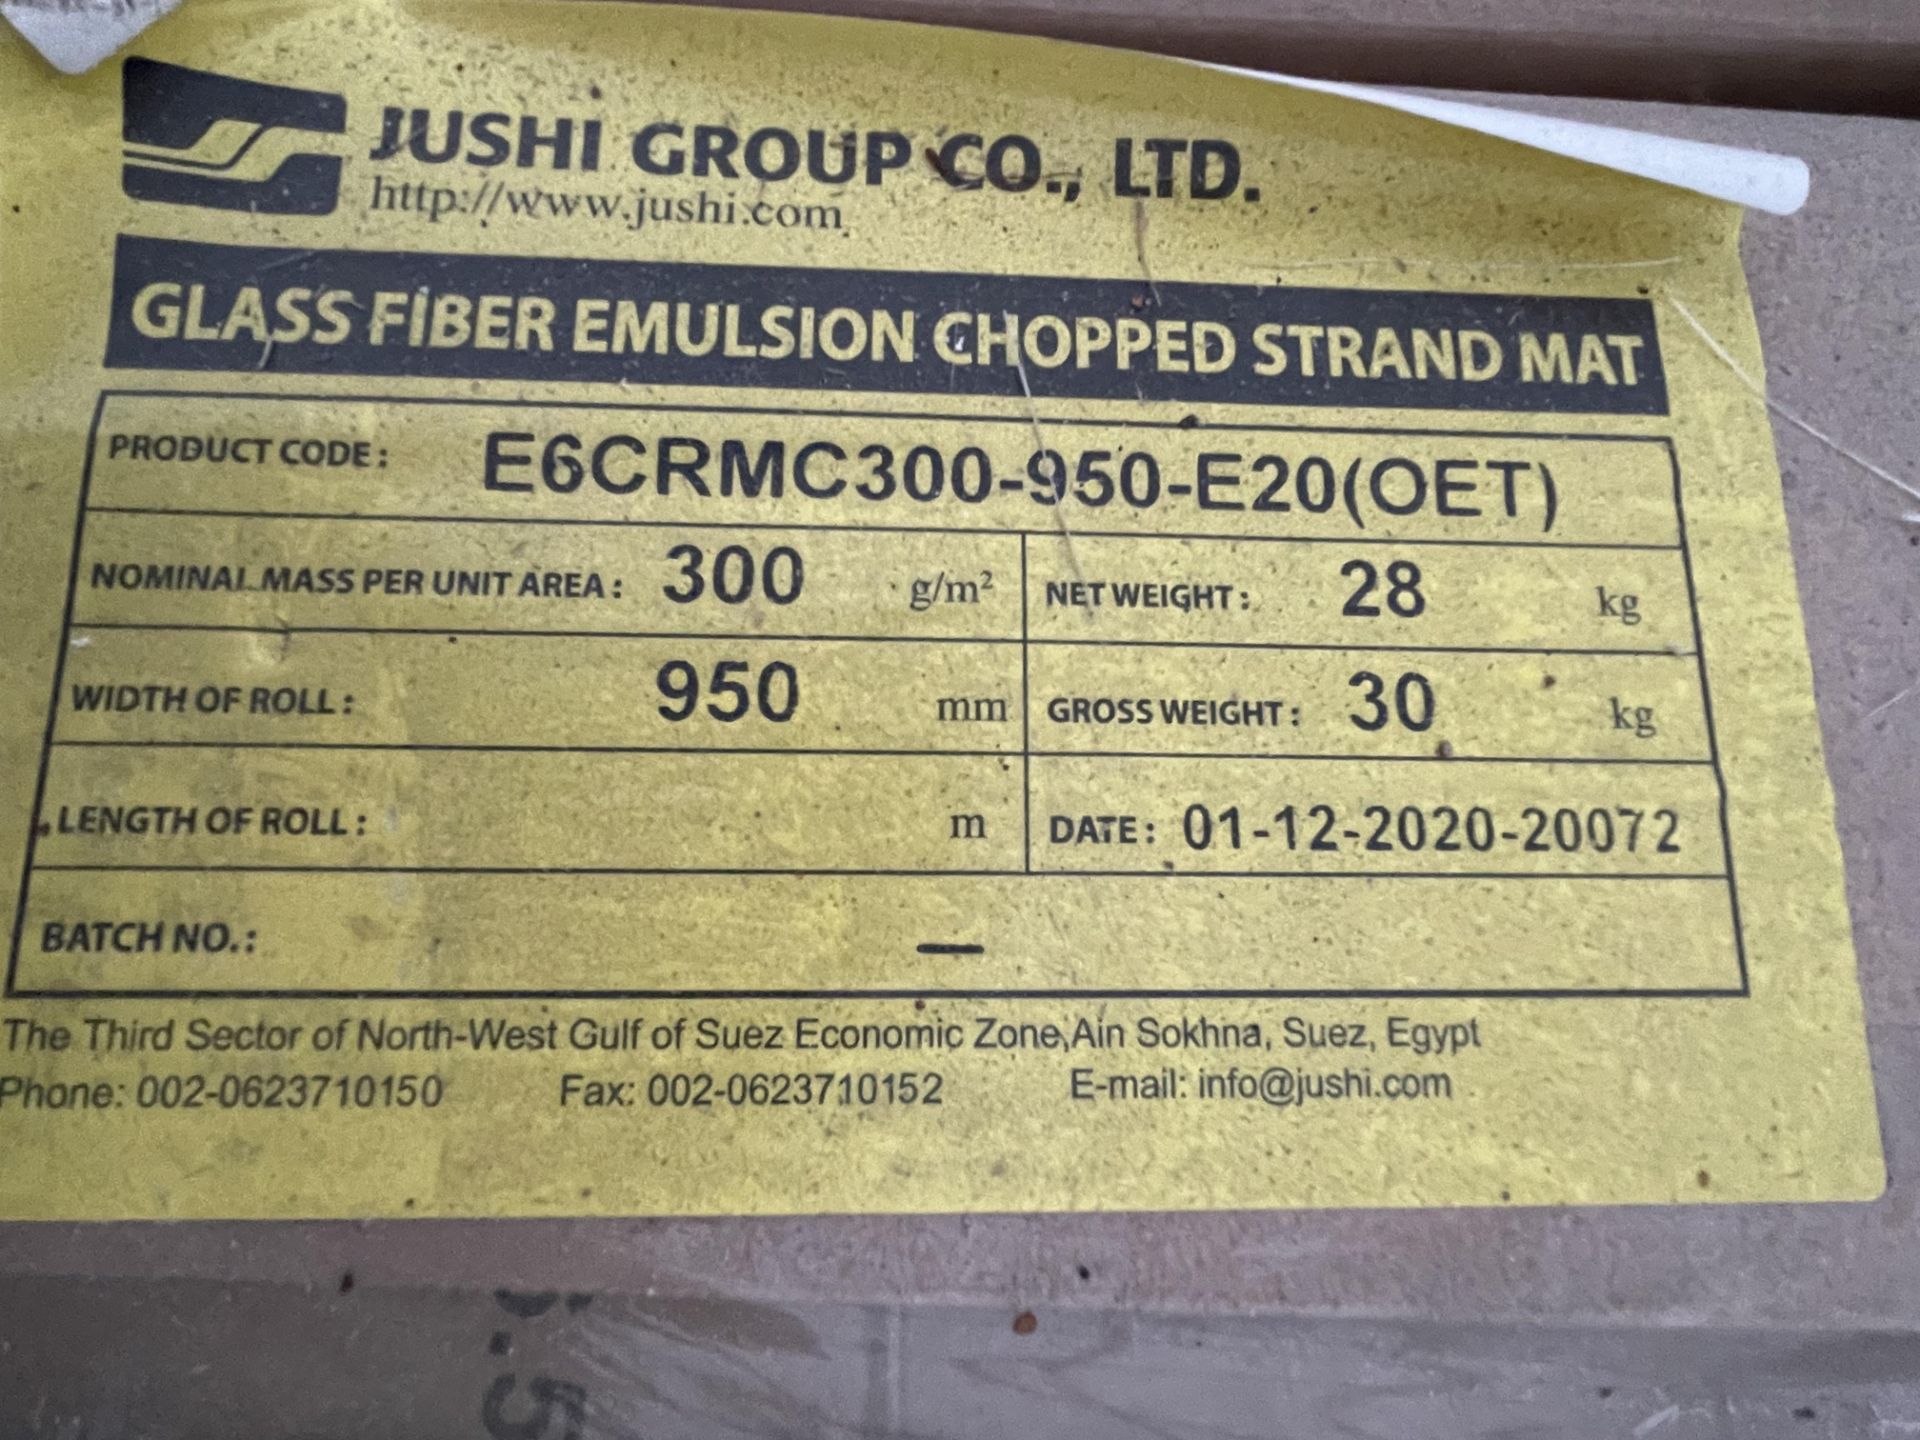 Pallet of 16x Jushi E6CRMC300-950-E20 300g/m2 950mm Glass Fiber Emulsion Chopped Strand Mat - Image 4 of 4